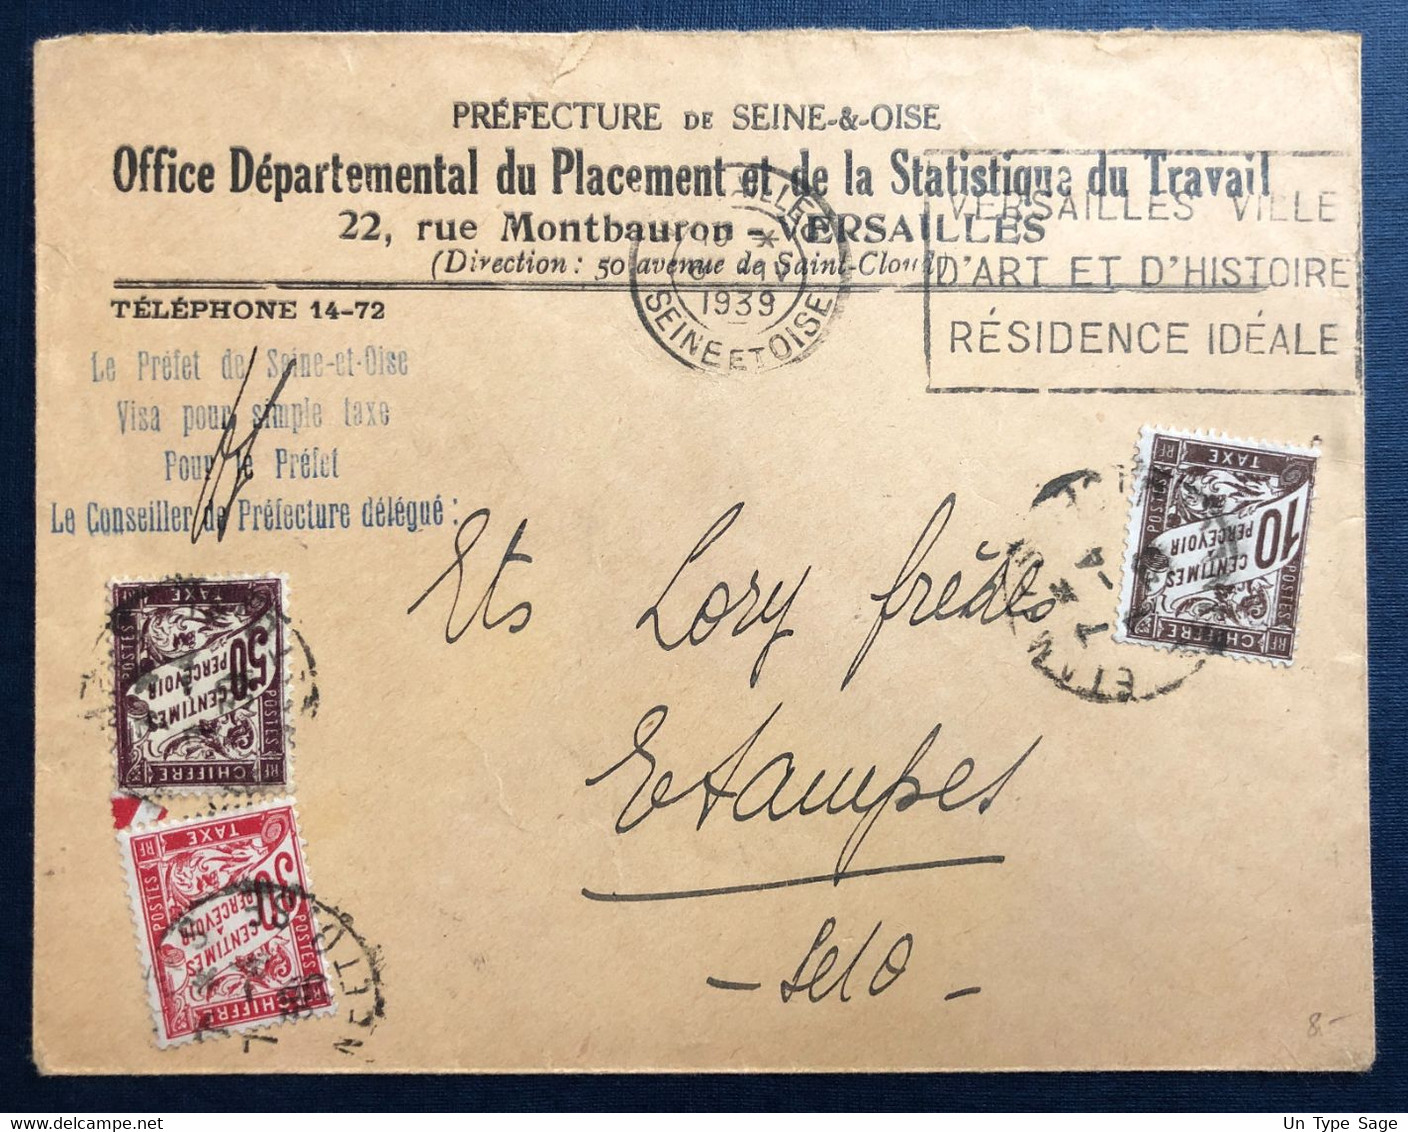 France Taxe Sur Enveloppe De Versailles 6.4.1939 - (B4493) - 1859-1959 Storia Postale